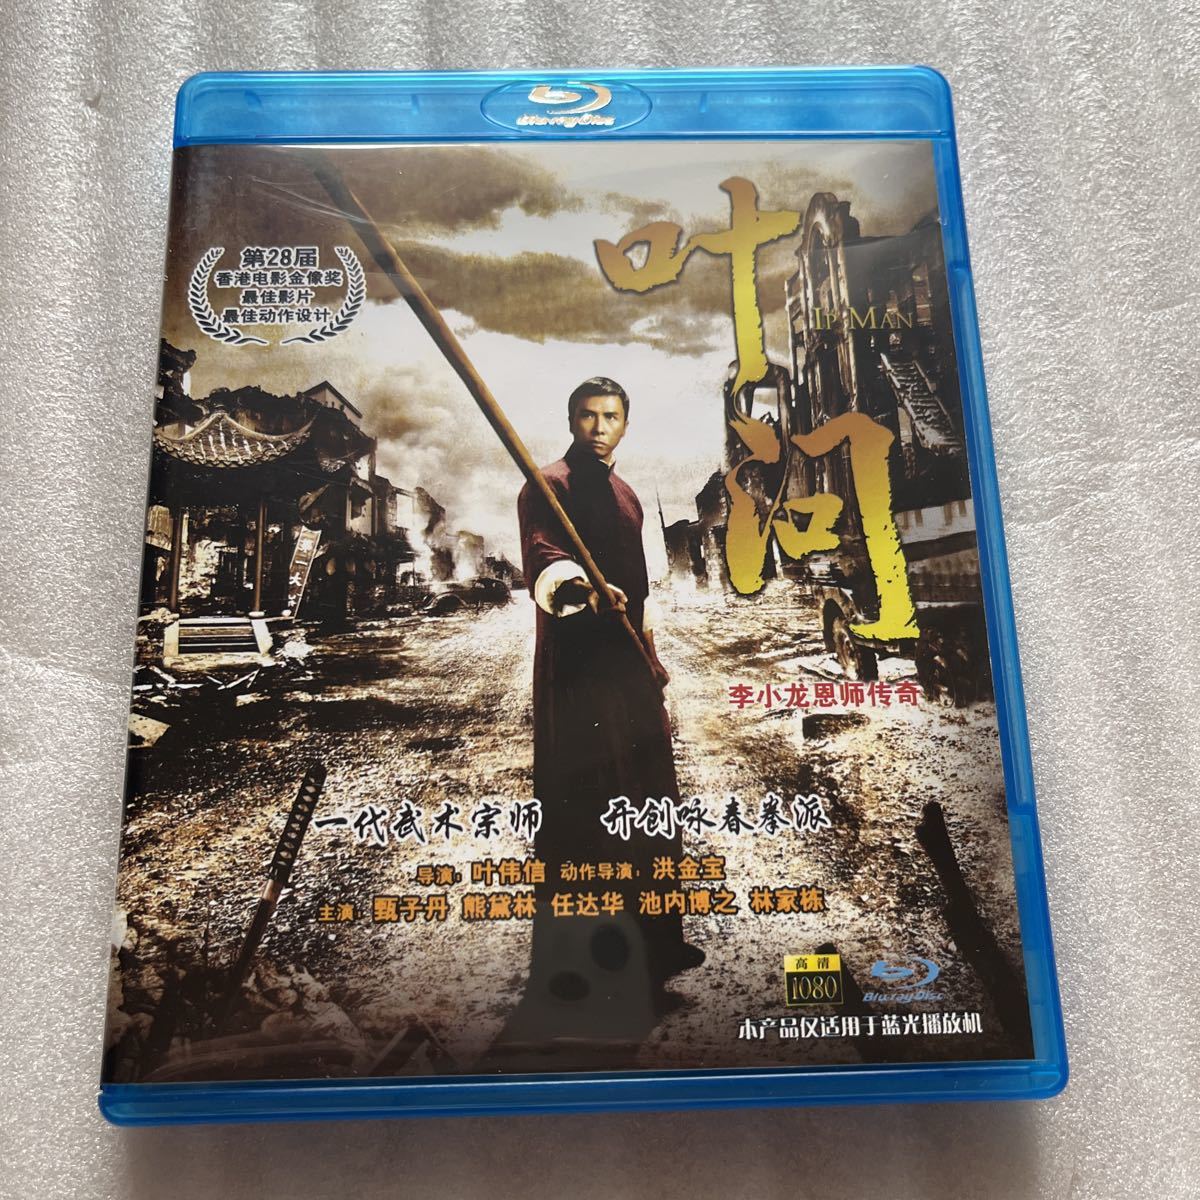 ブルーレイ 叶河 Ip MAN 中国 映画 中国語 Blu-ray Blu-ray Disc 外国 映画 海外 洋画 BD ディスク_画像1